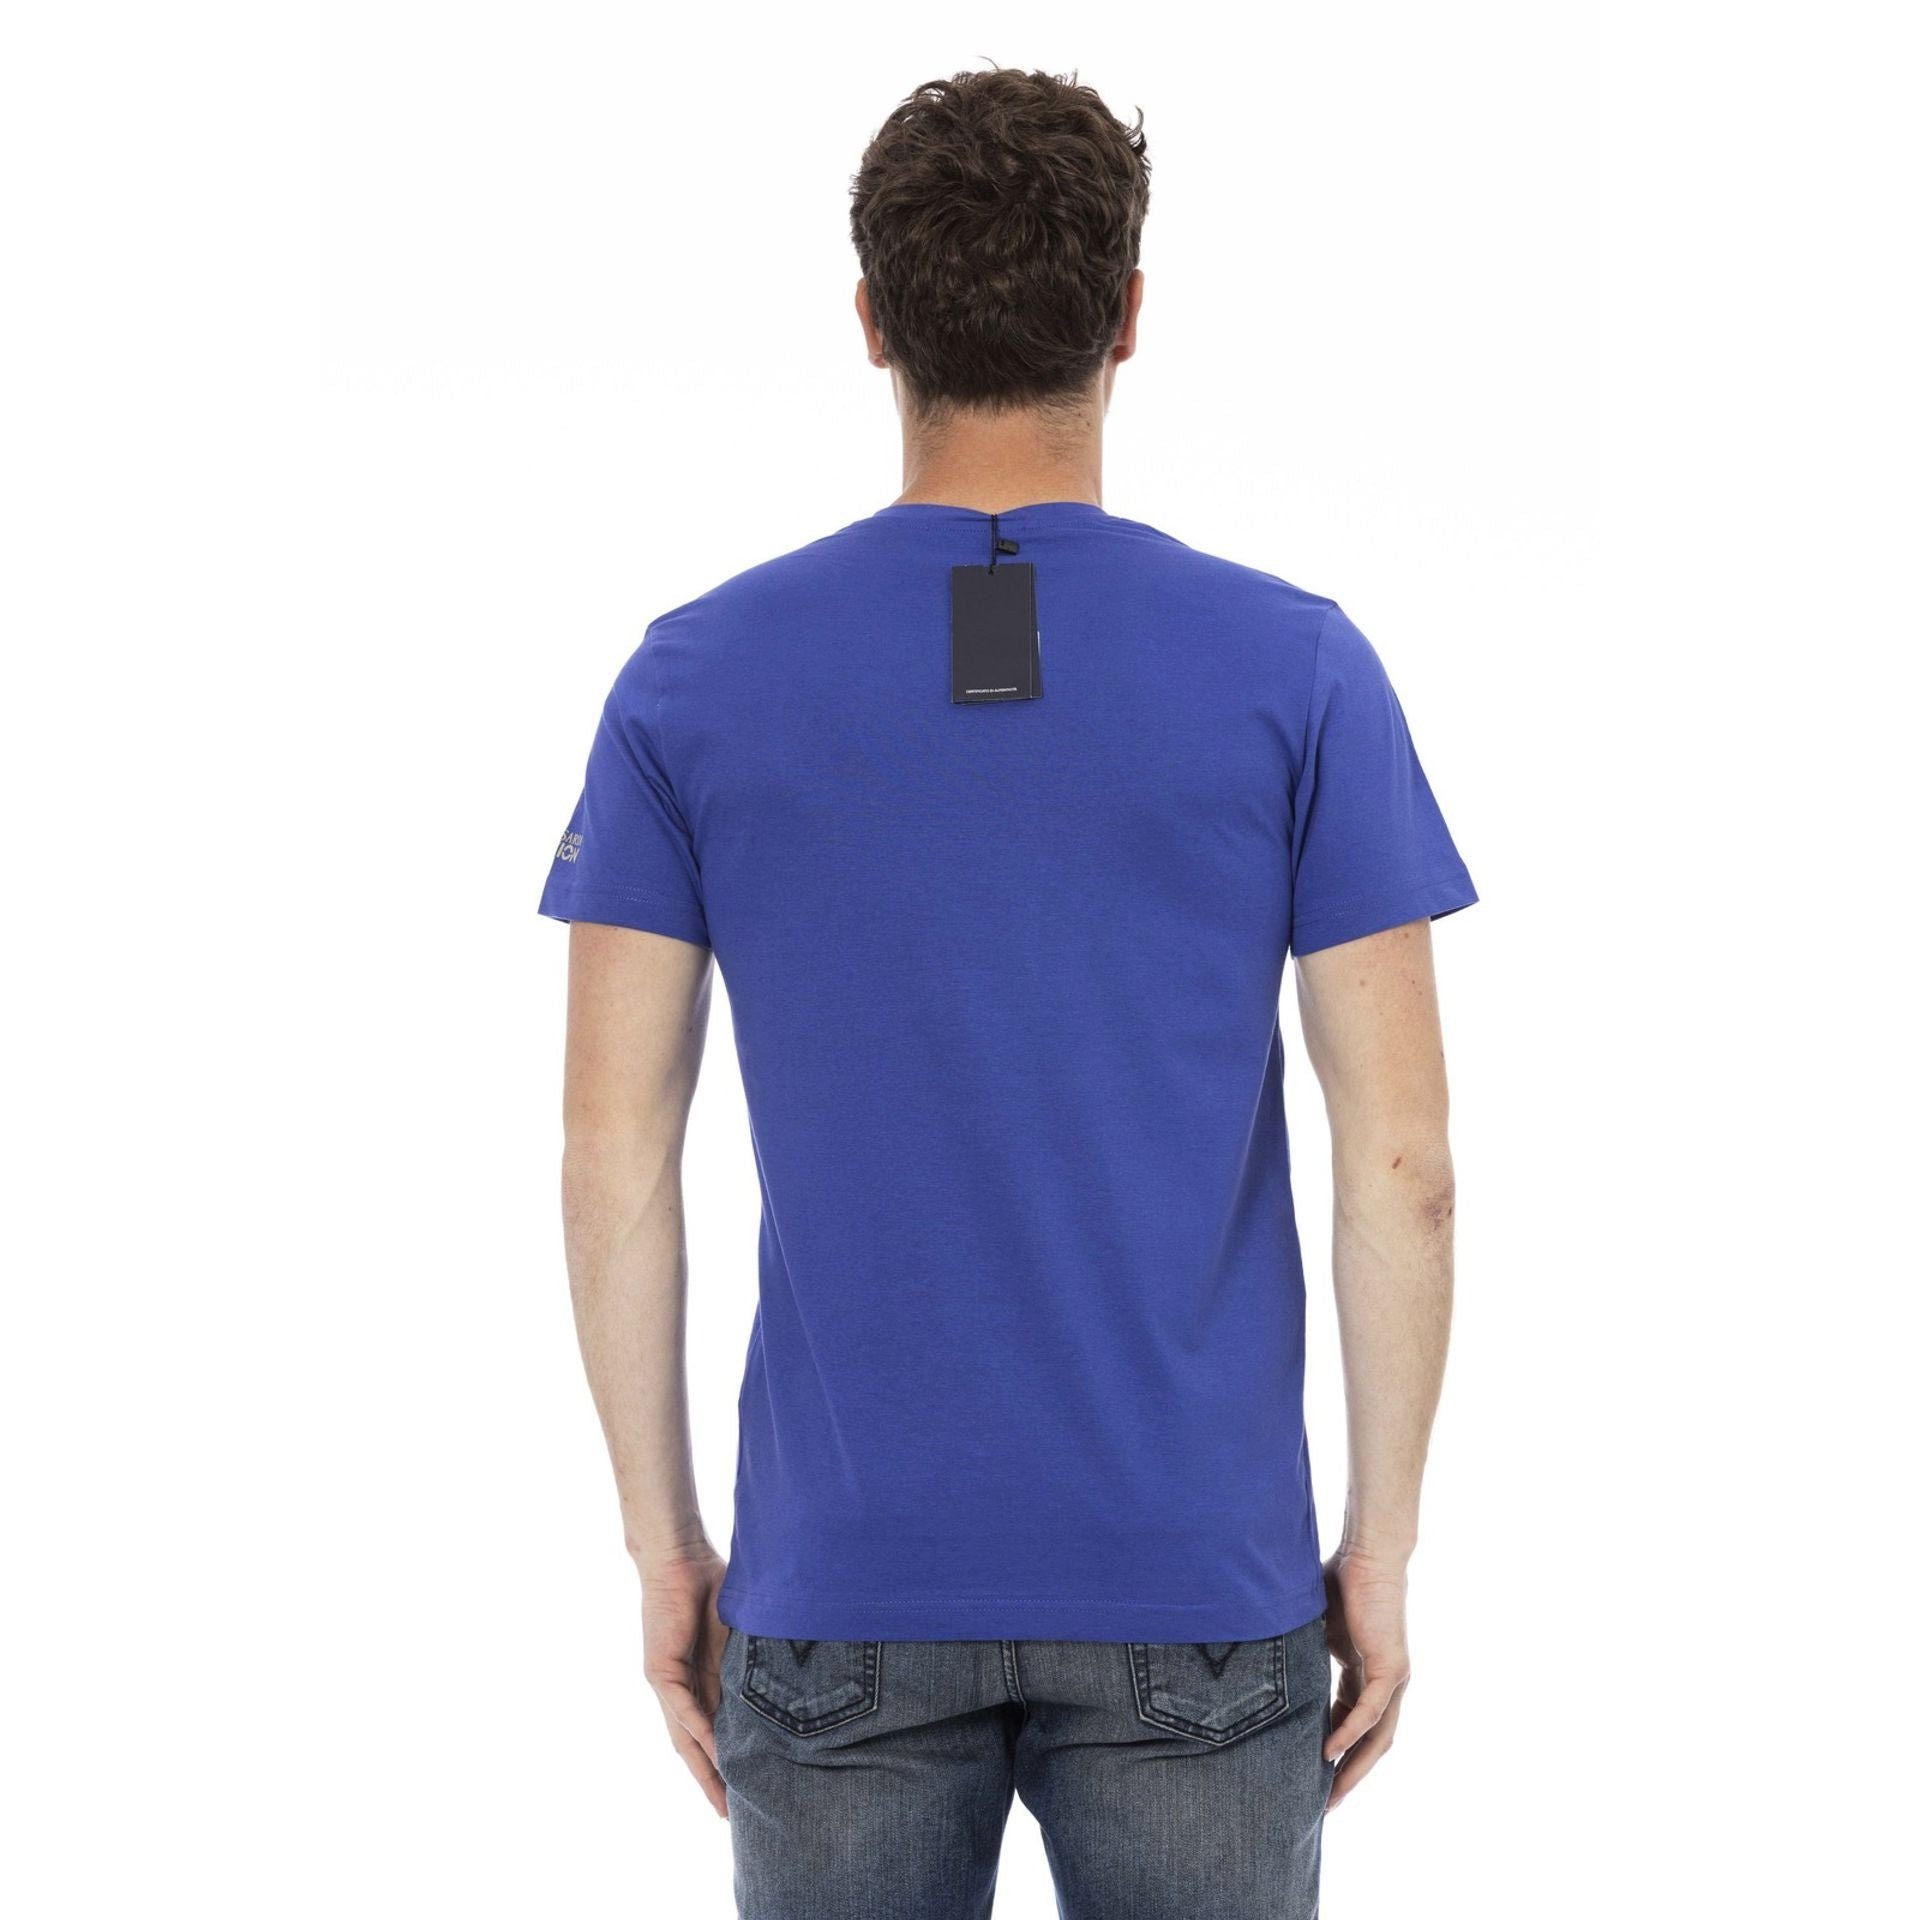 durch verleiht aber T-Shirts, Trussardi Trussardi T-Shirt zeichnet das Note Action eine sich stilvolle Es das aus, subtile, Logo-Muster Blau